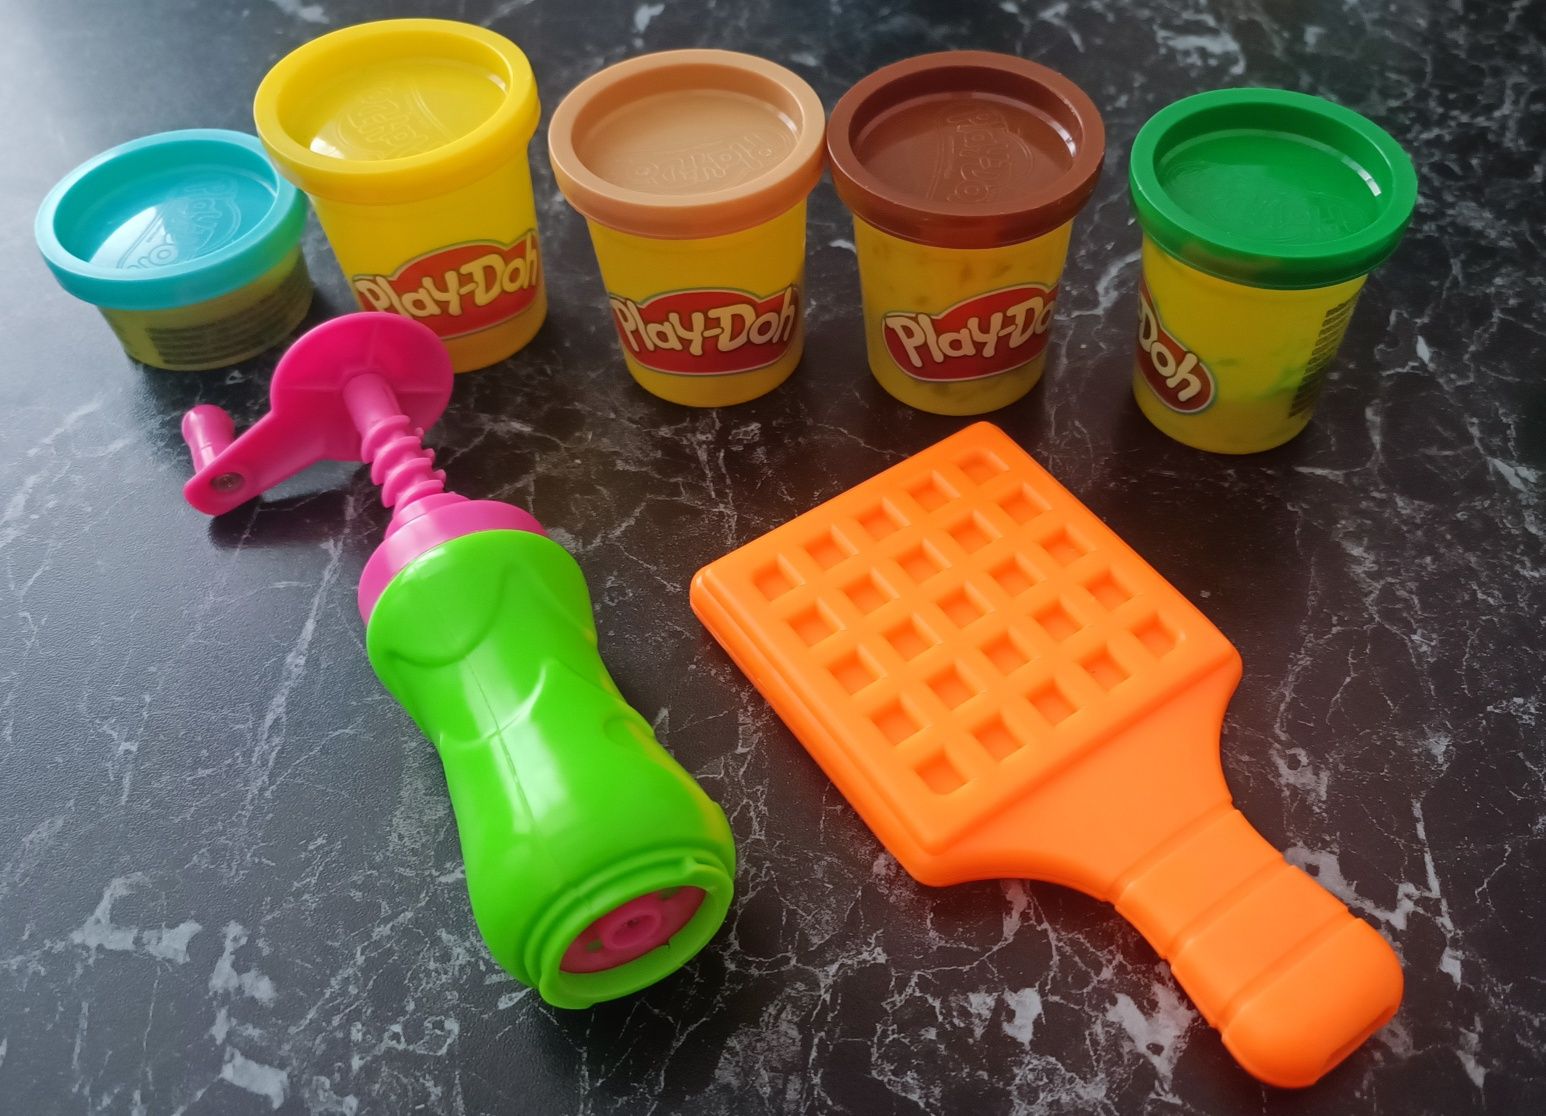 Play-Doh бургер гриль + додаткові предмети